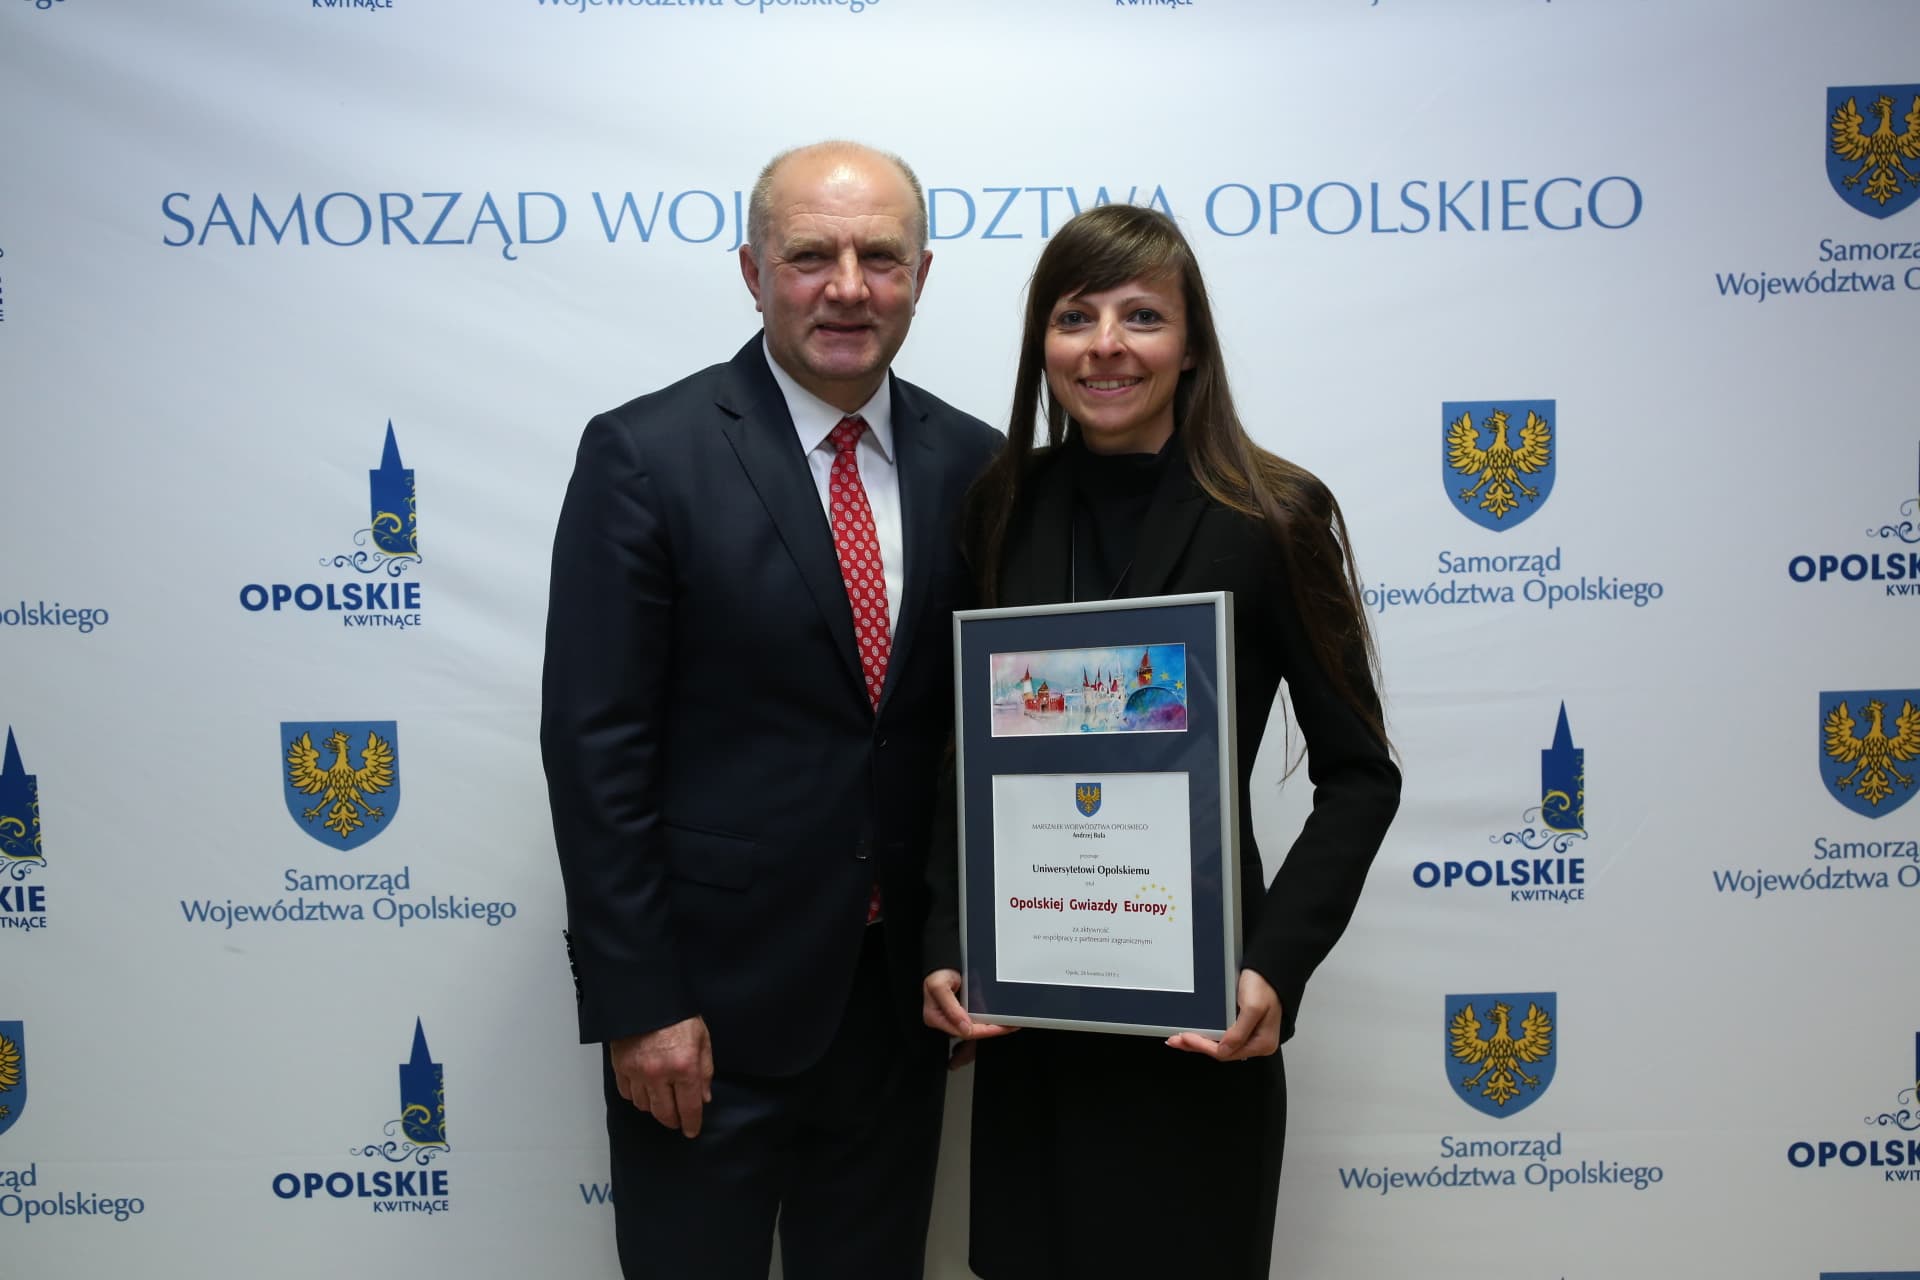 Przeniesienie do informacji o tytule: Opole European Star for the UO